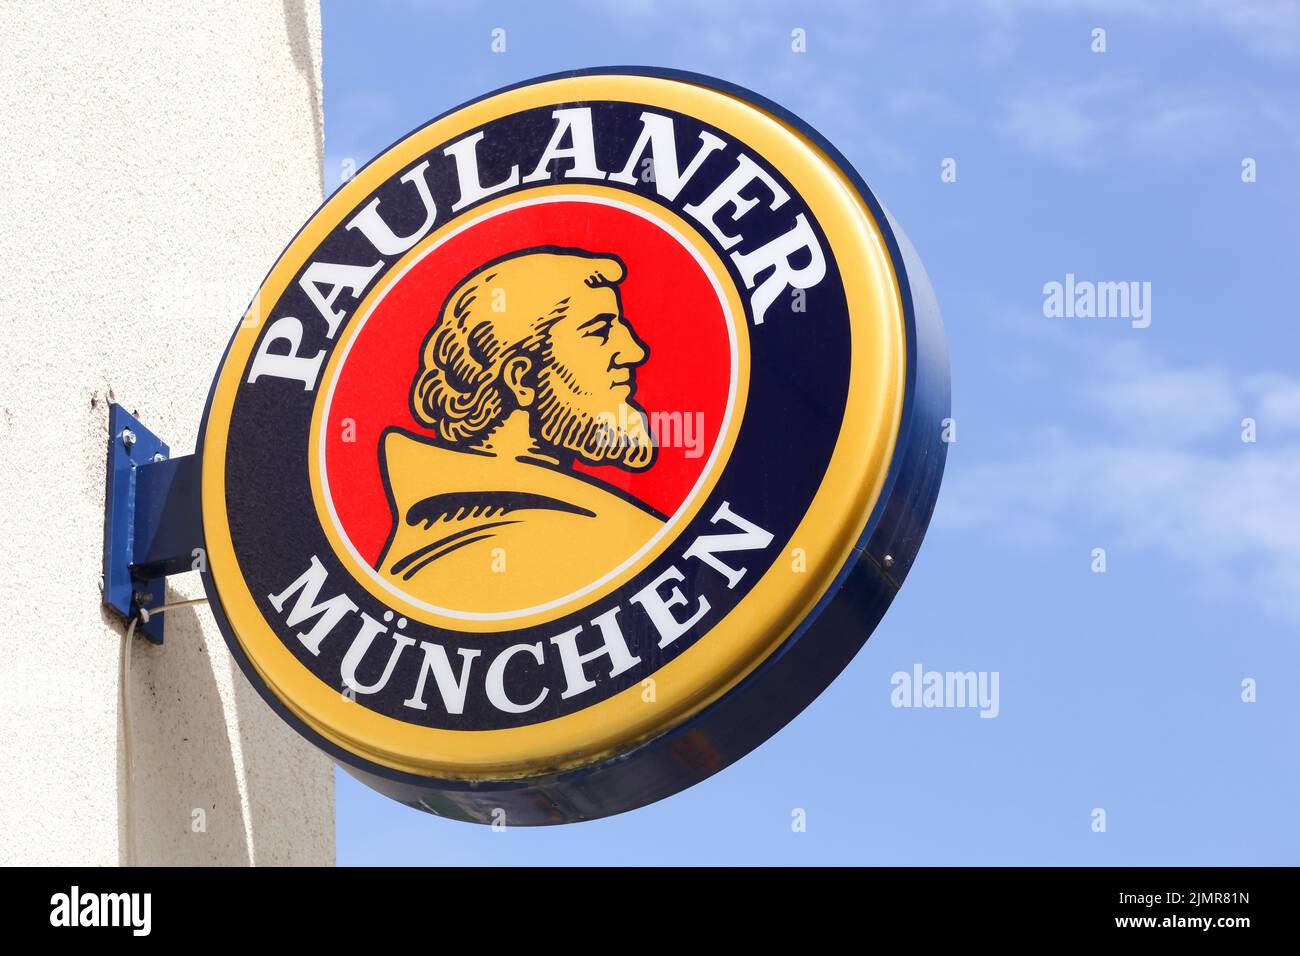 Arnas, France - 7 juin 2020 : logo Paulaner sur une pancarte. Paulaner est une brasserie allemande, fondée en 1634 à Munich, en Allemagne Banque D'Images